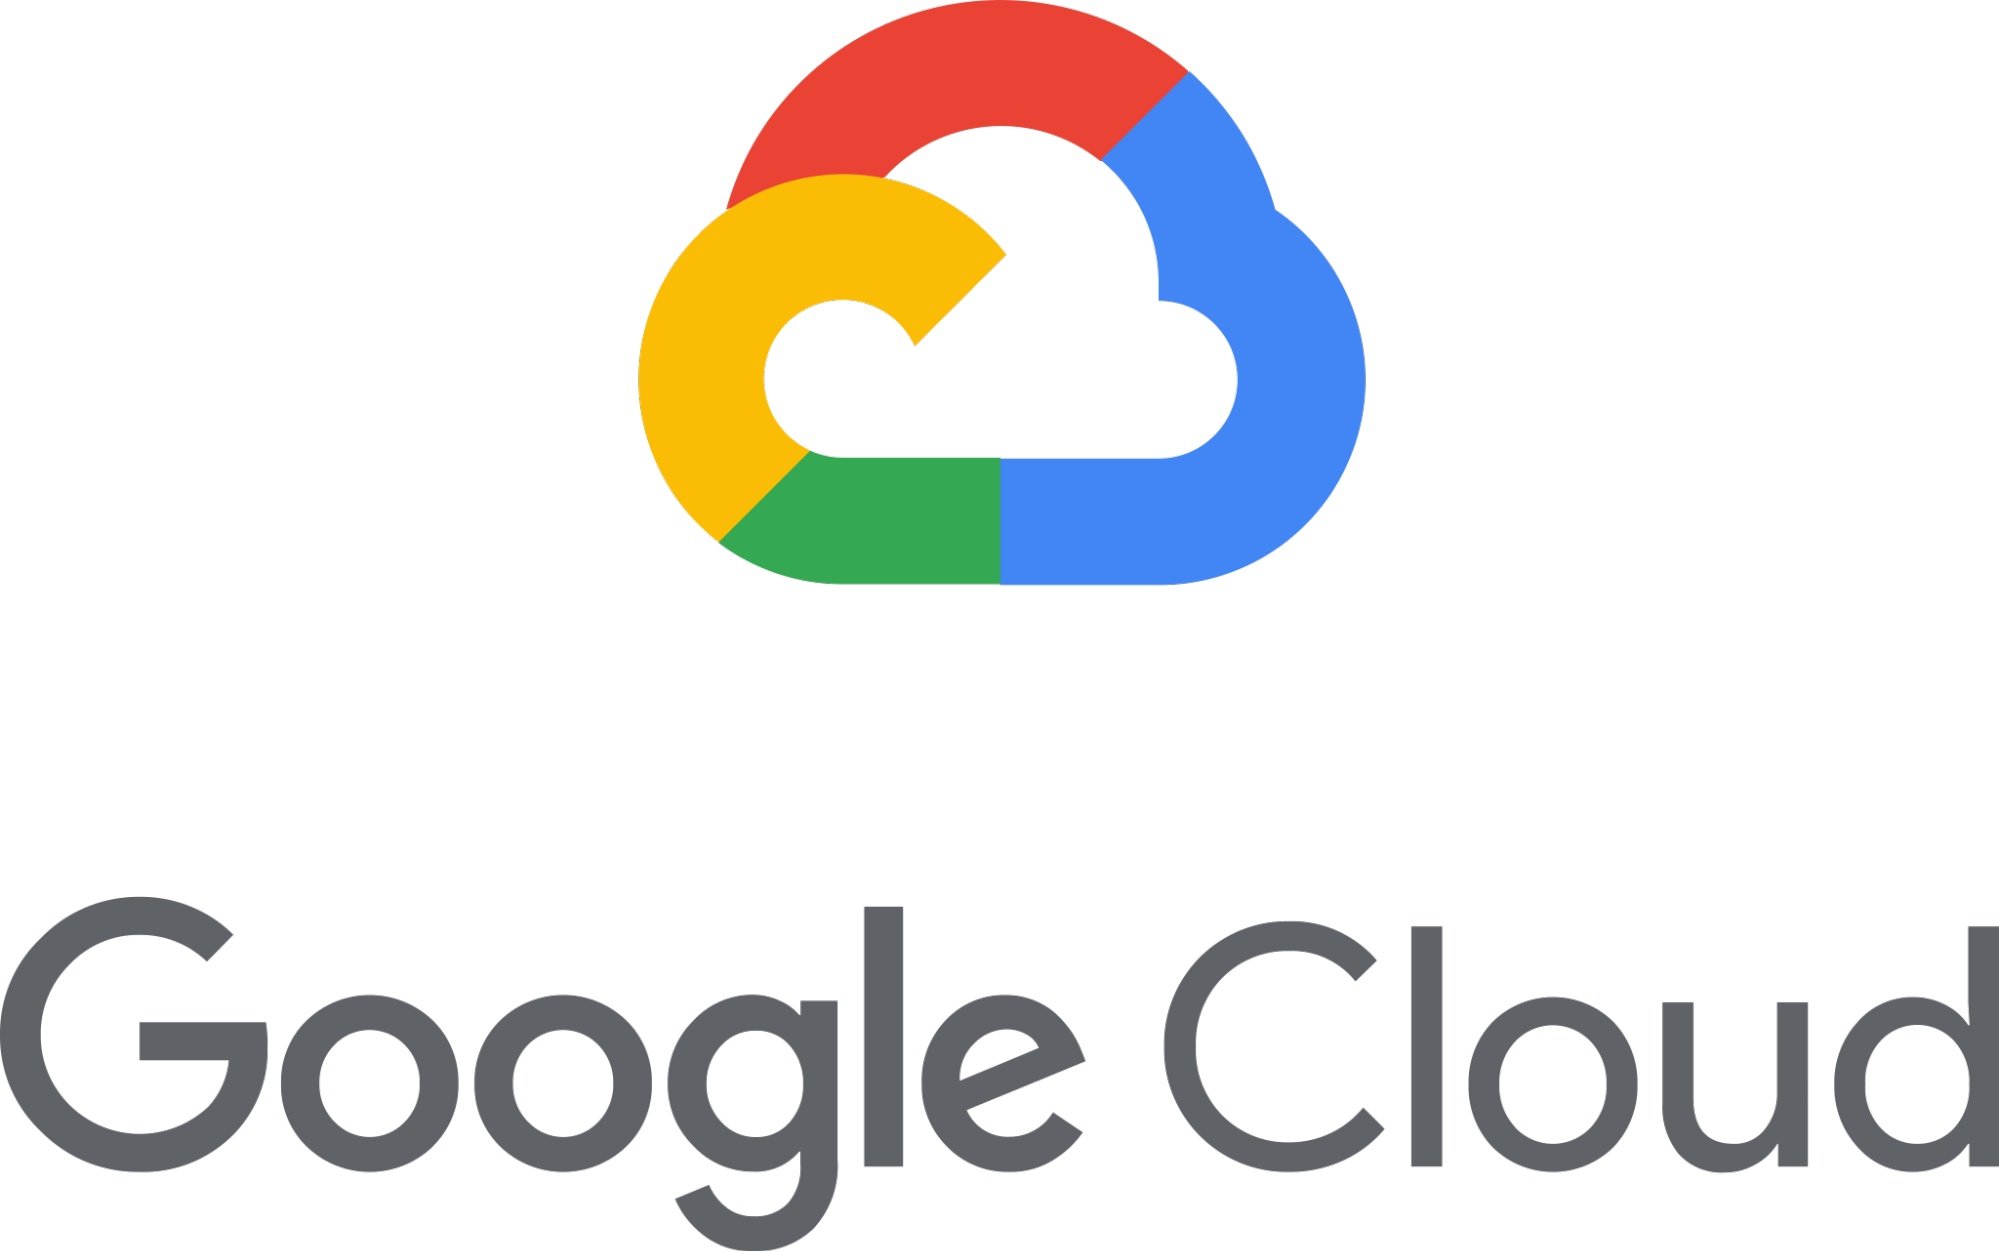 Logo do Google Cloud. A imagem apresenta o desenho centralizado de uma nuvem com as cores características do Google (azul, vermelho, amarelo e verde). Logo abaixo, traz as  palavras “Google Cloud”.